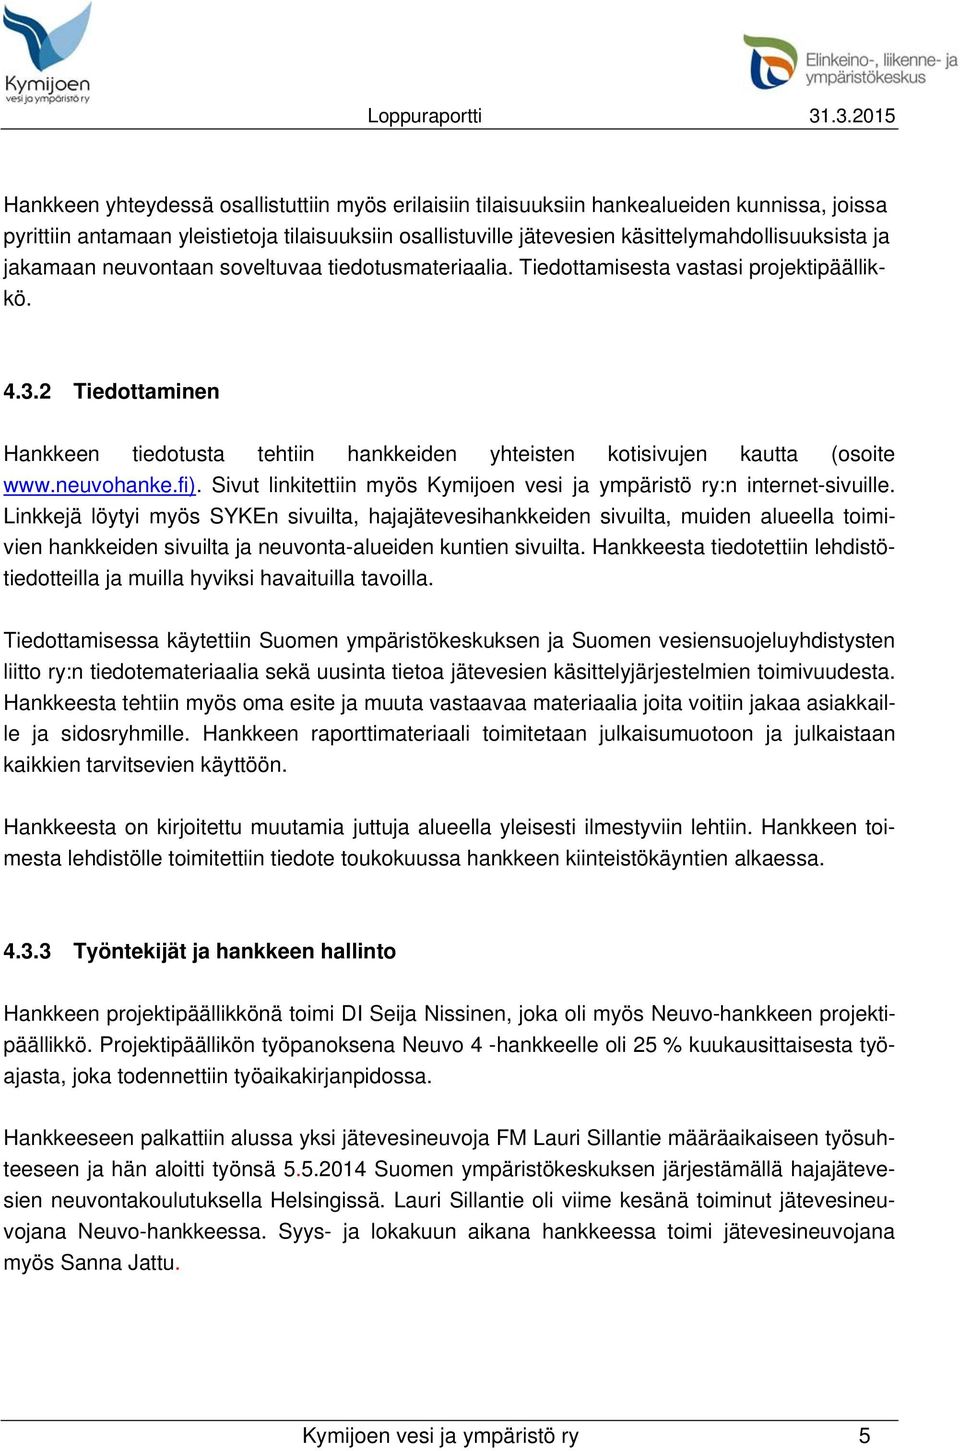 neuvohanke.fi). Sivut linkitettiin myös Kymijoen vesi ja ympäristö ry:n internet-sivuille.